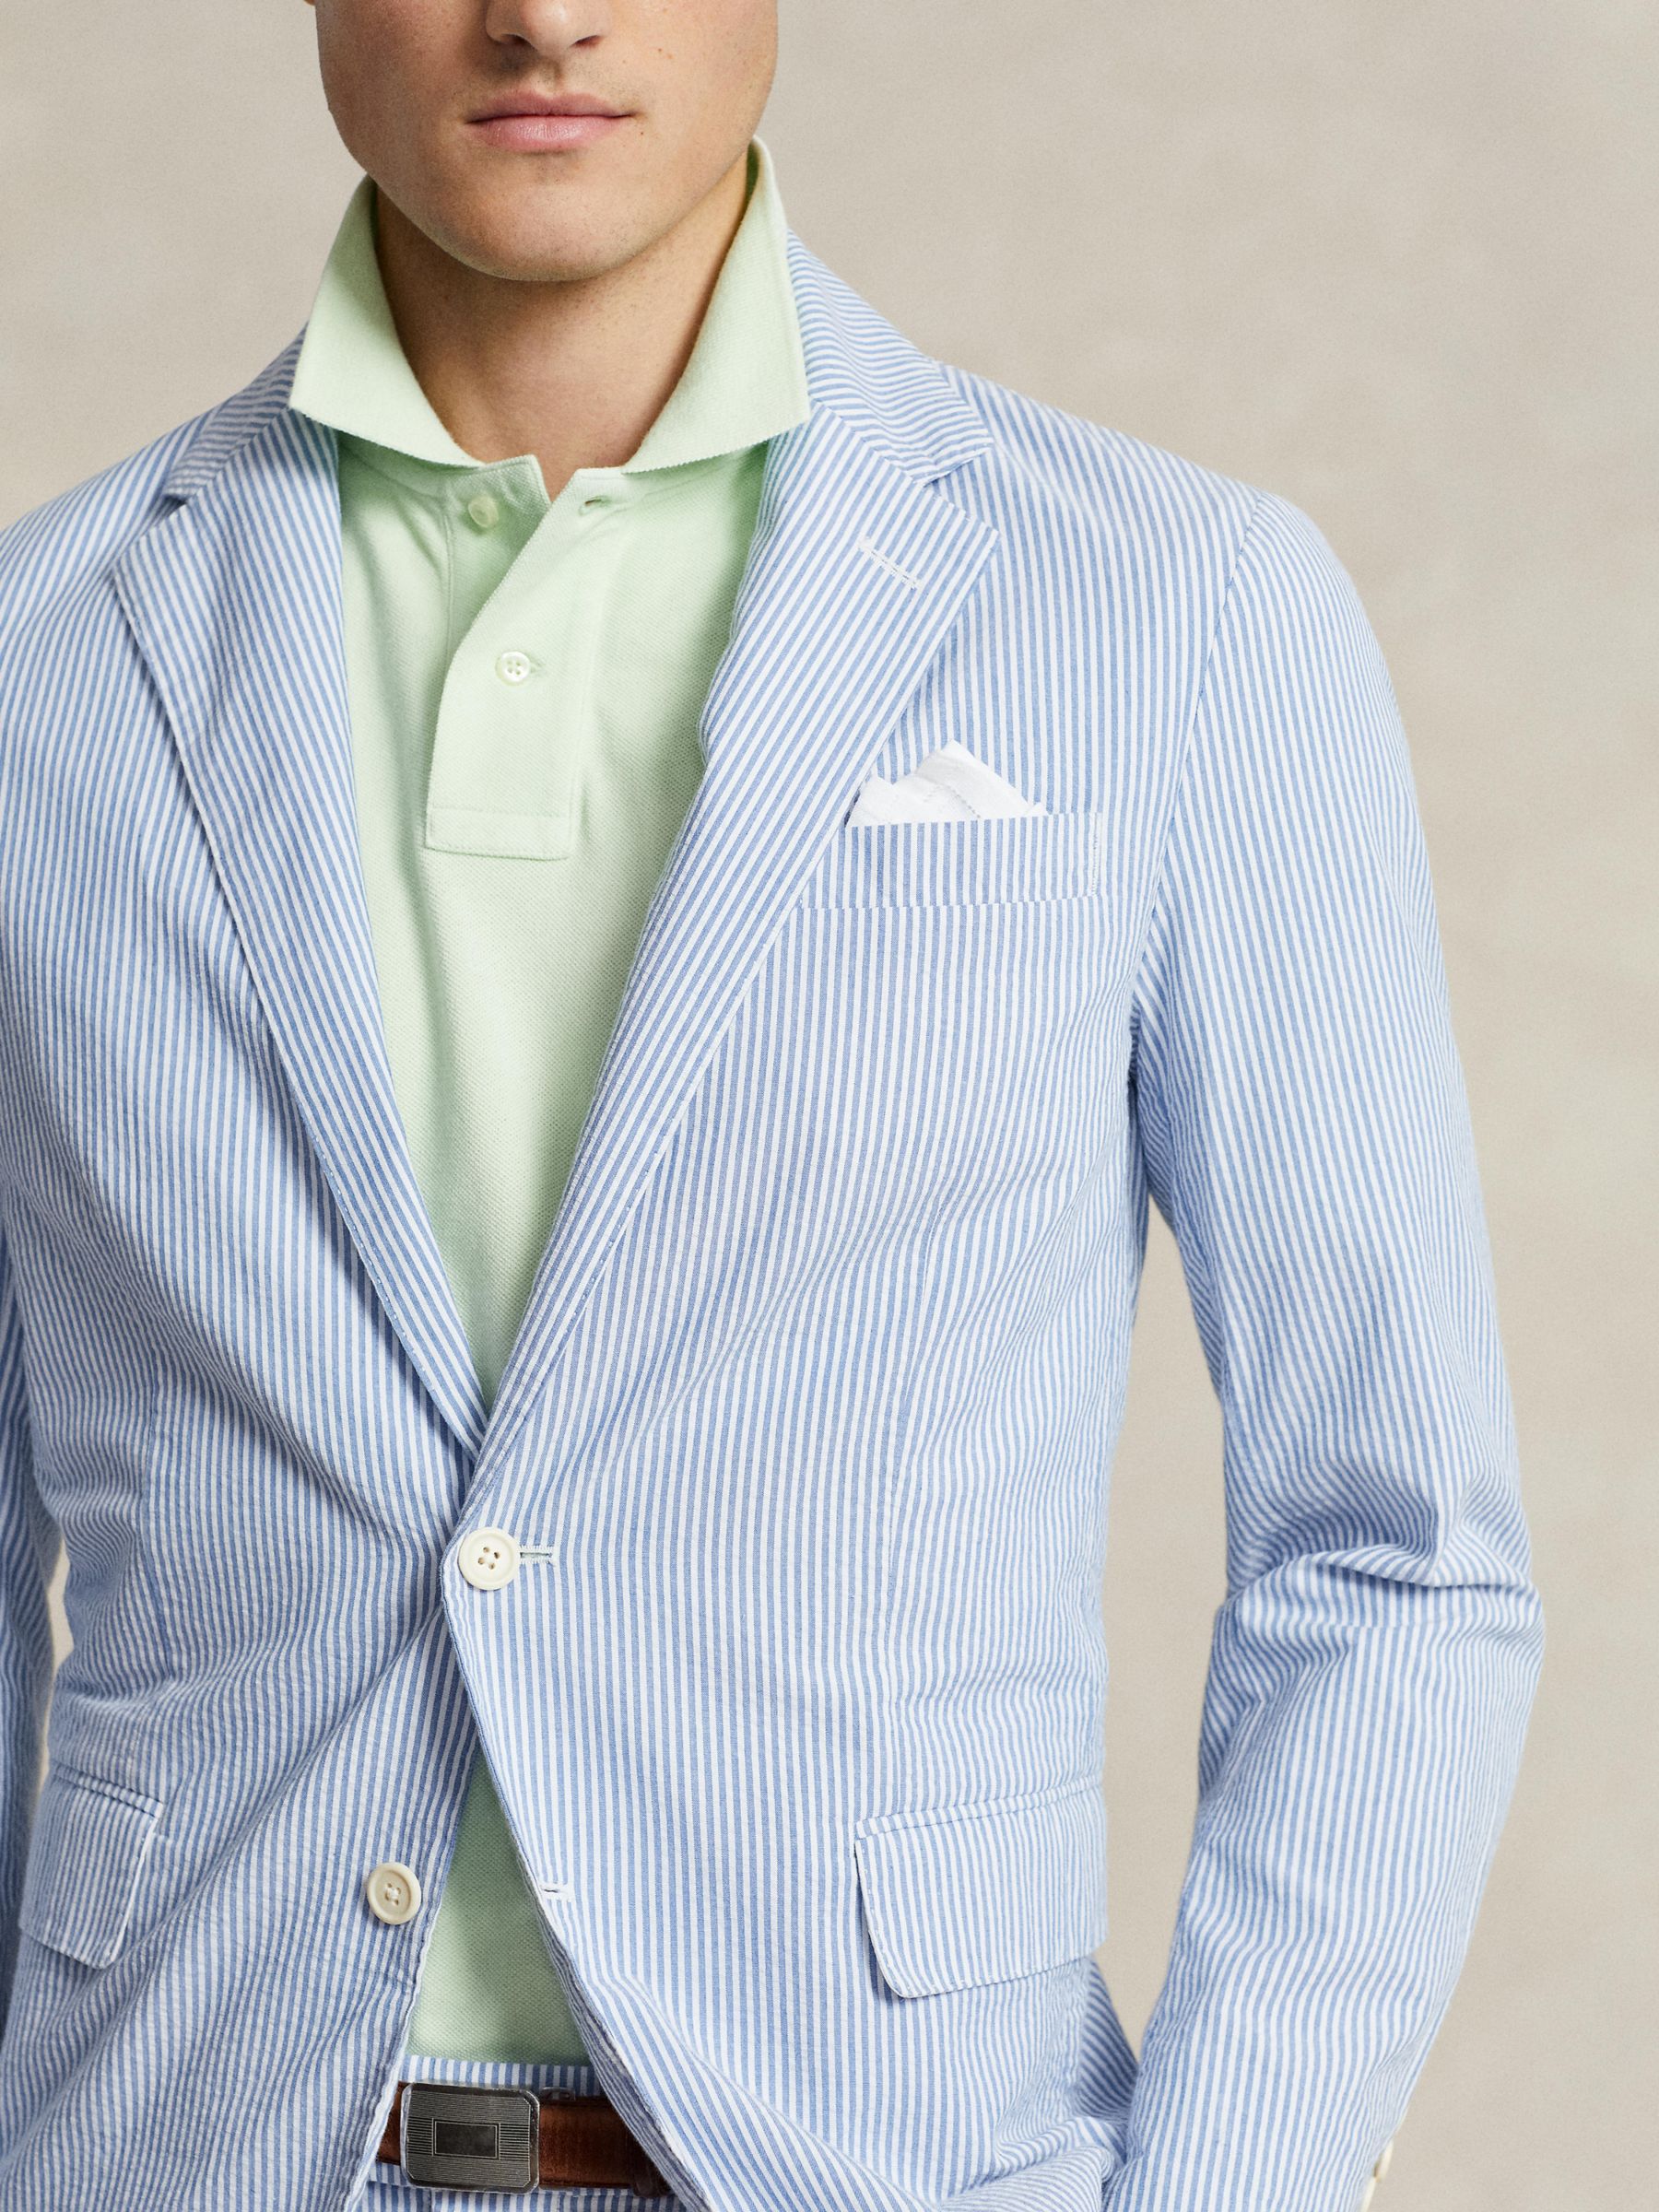 Ralph Lauren Soft Modern Seersucker Suit Jacket, Bright Blue/White, S